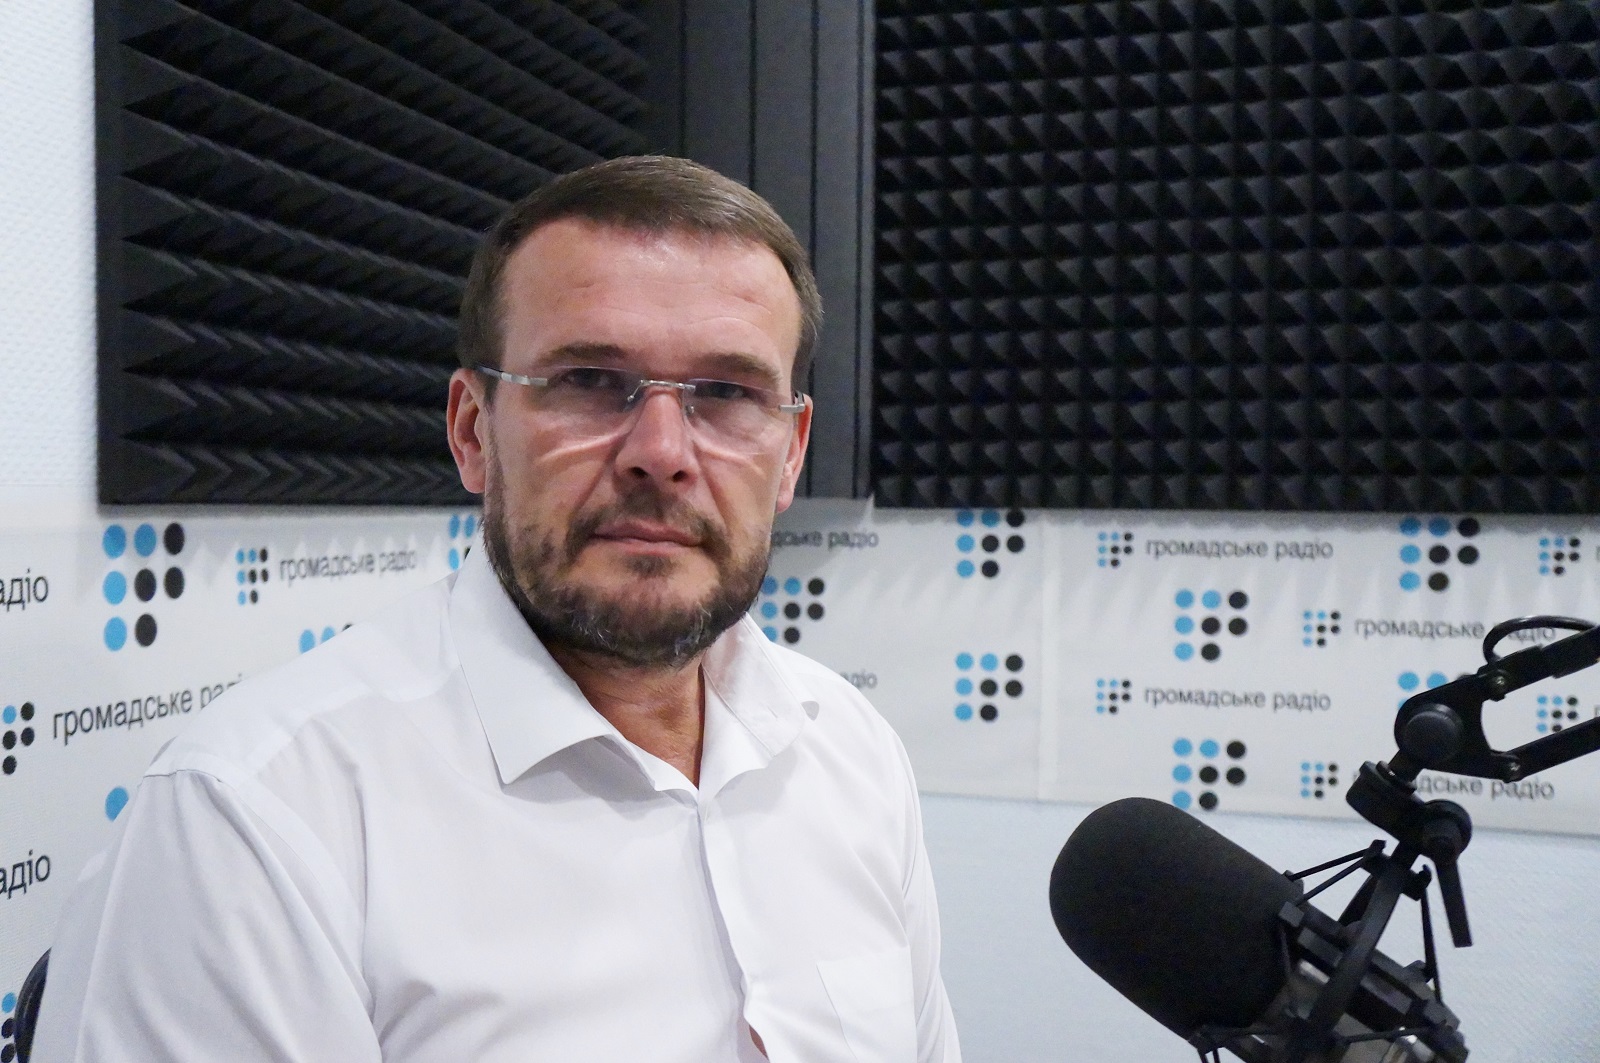 Скандал вокруг НАБУ обусловлен бестолковостью законодательства, — Вакаров